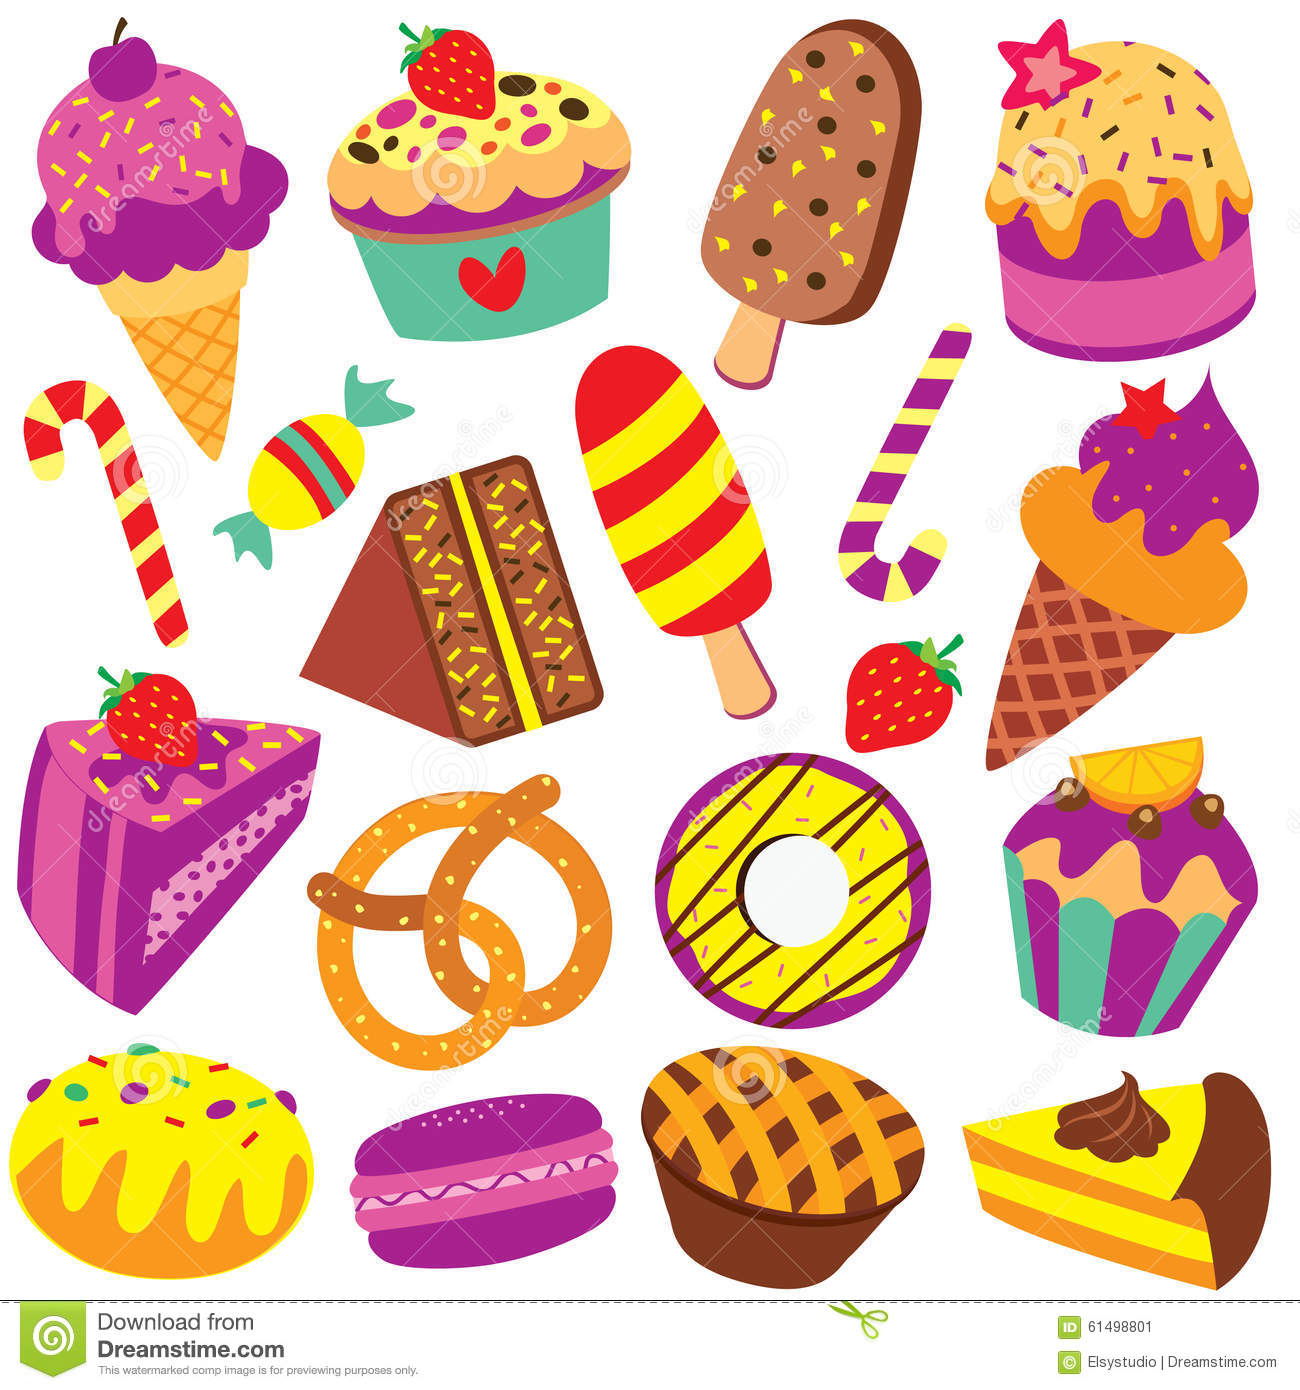 Colorful desserts clip art set